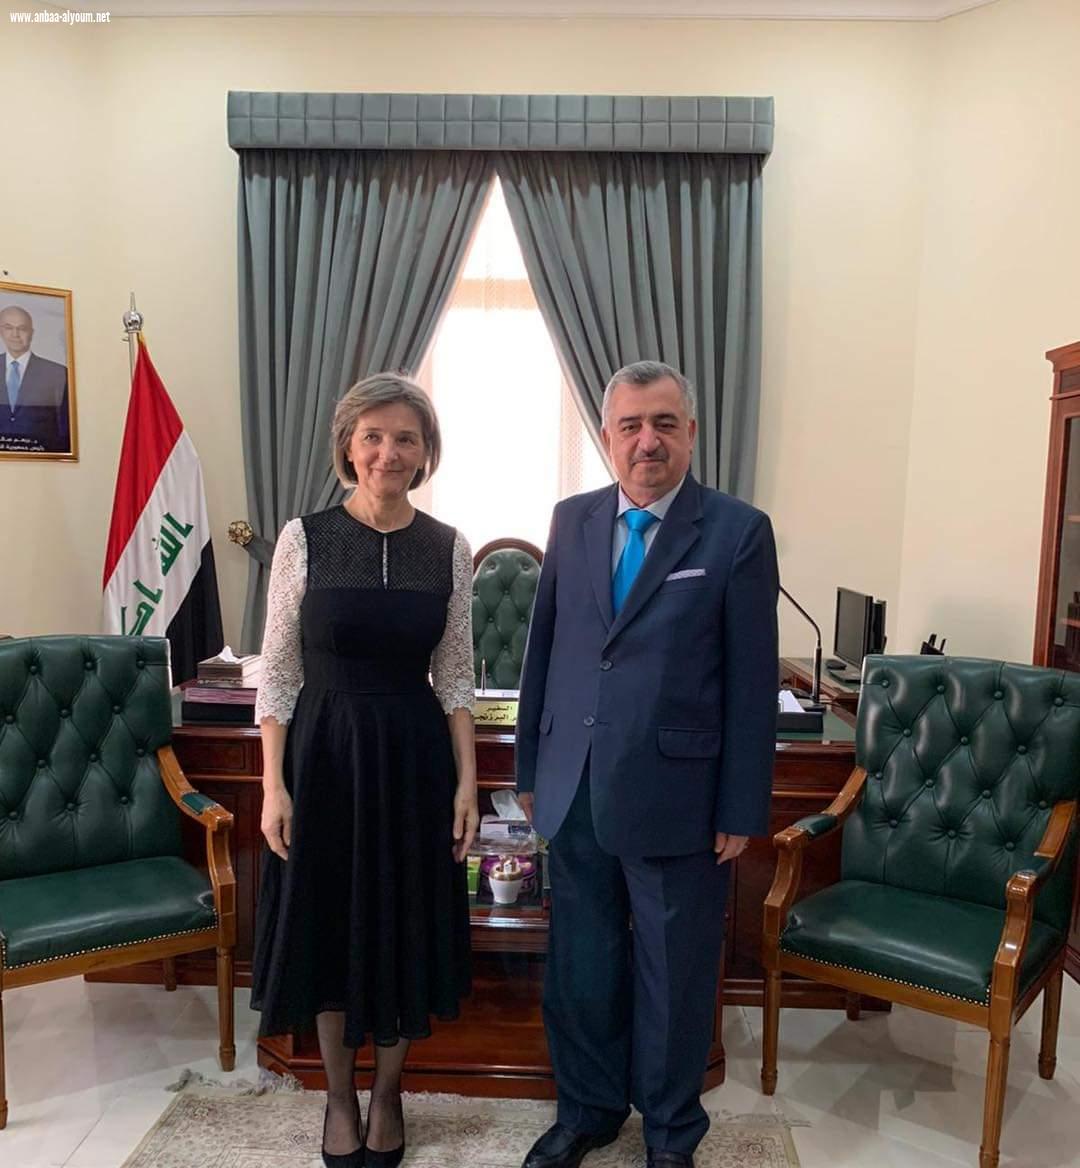 السفير عمر البرزنجي سفير جمهورية العراق لدى الدوحة  يستقبل سعادة سفيرة جمهورية اليونان السيدة هيليني ميشالوبولالو 